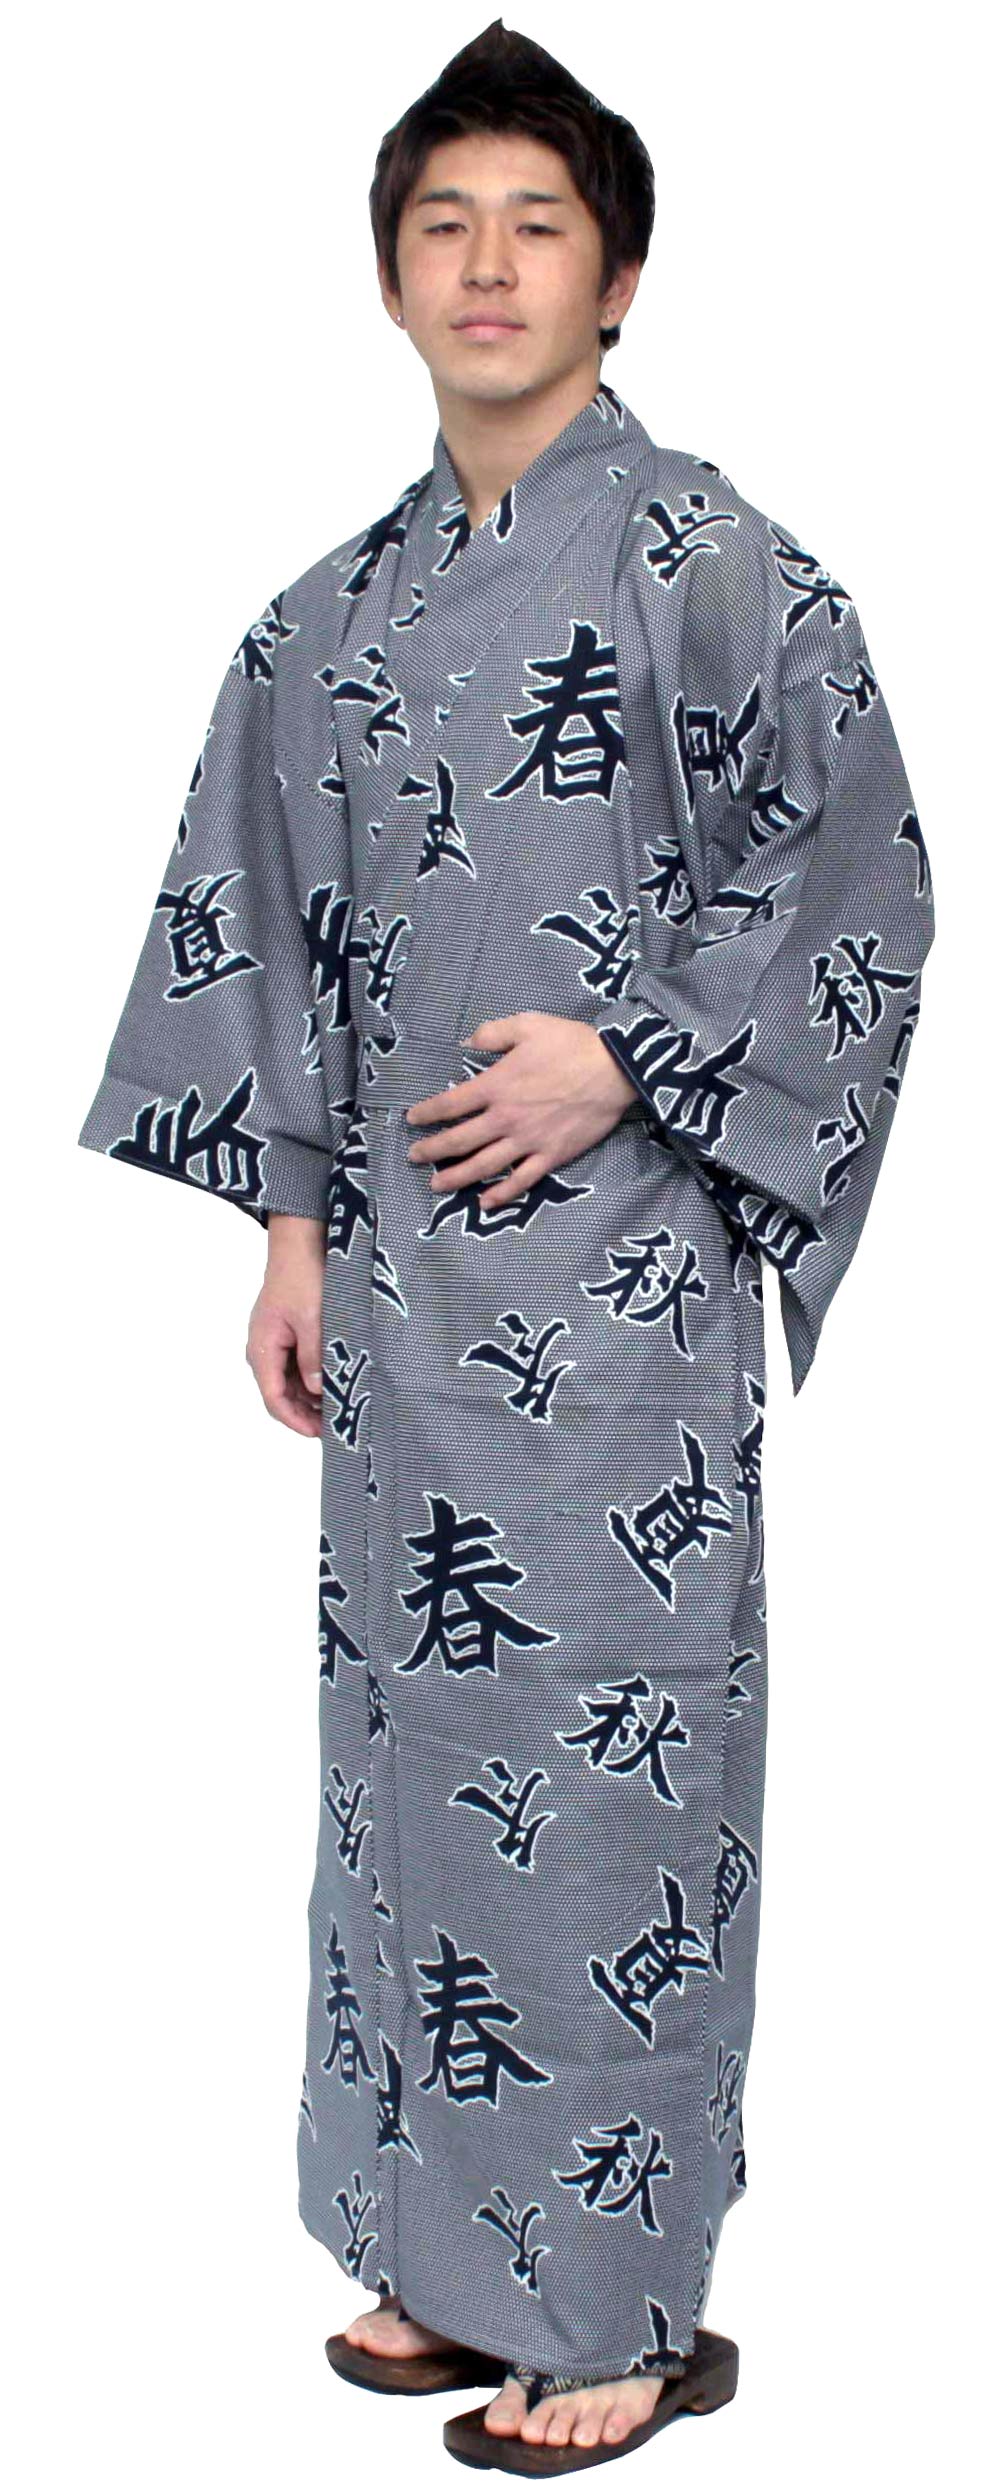 Men's Easy Yukata / Kimono Robe : Japanese Traditional Clothes - Robe Four Seasons